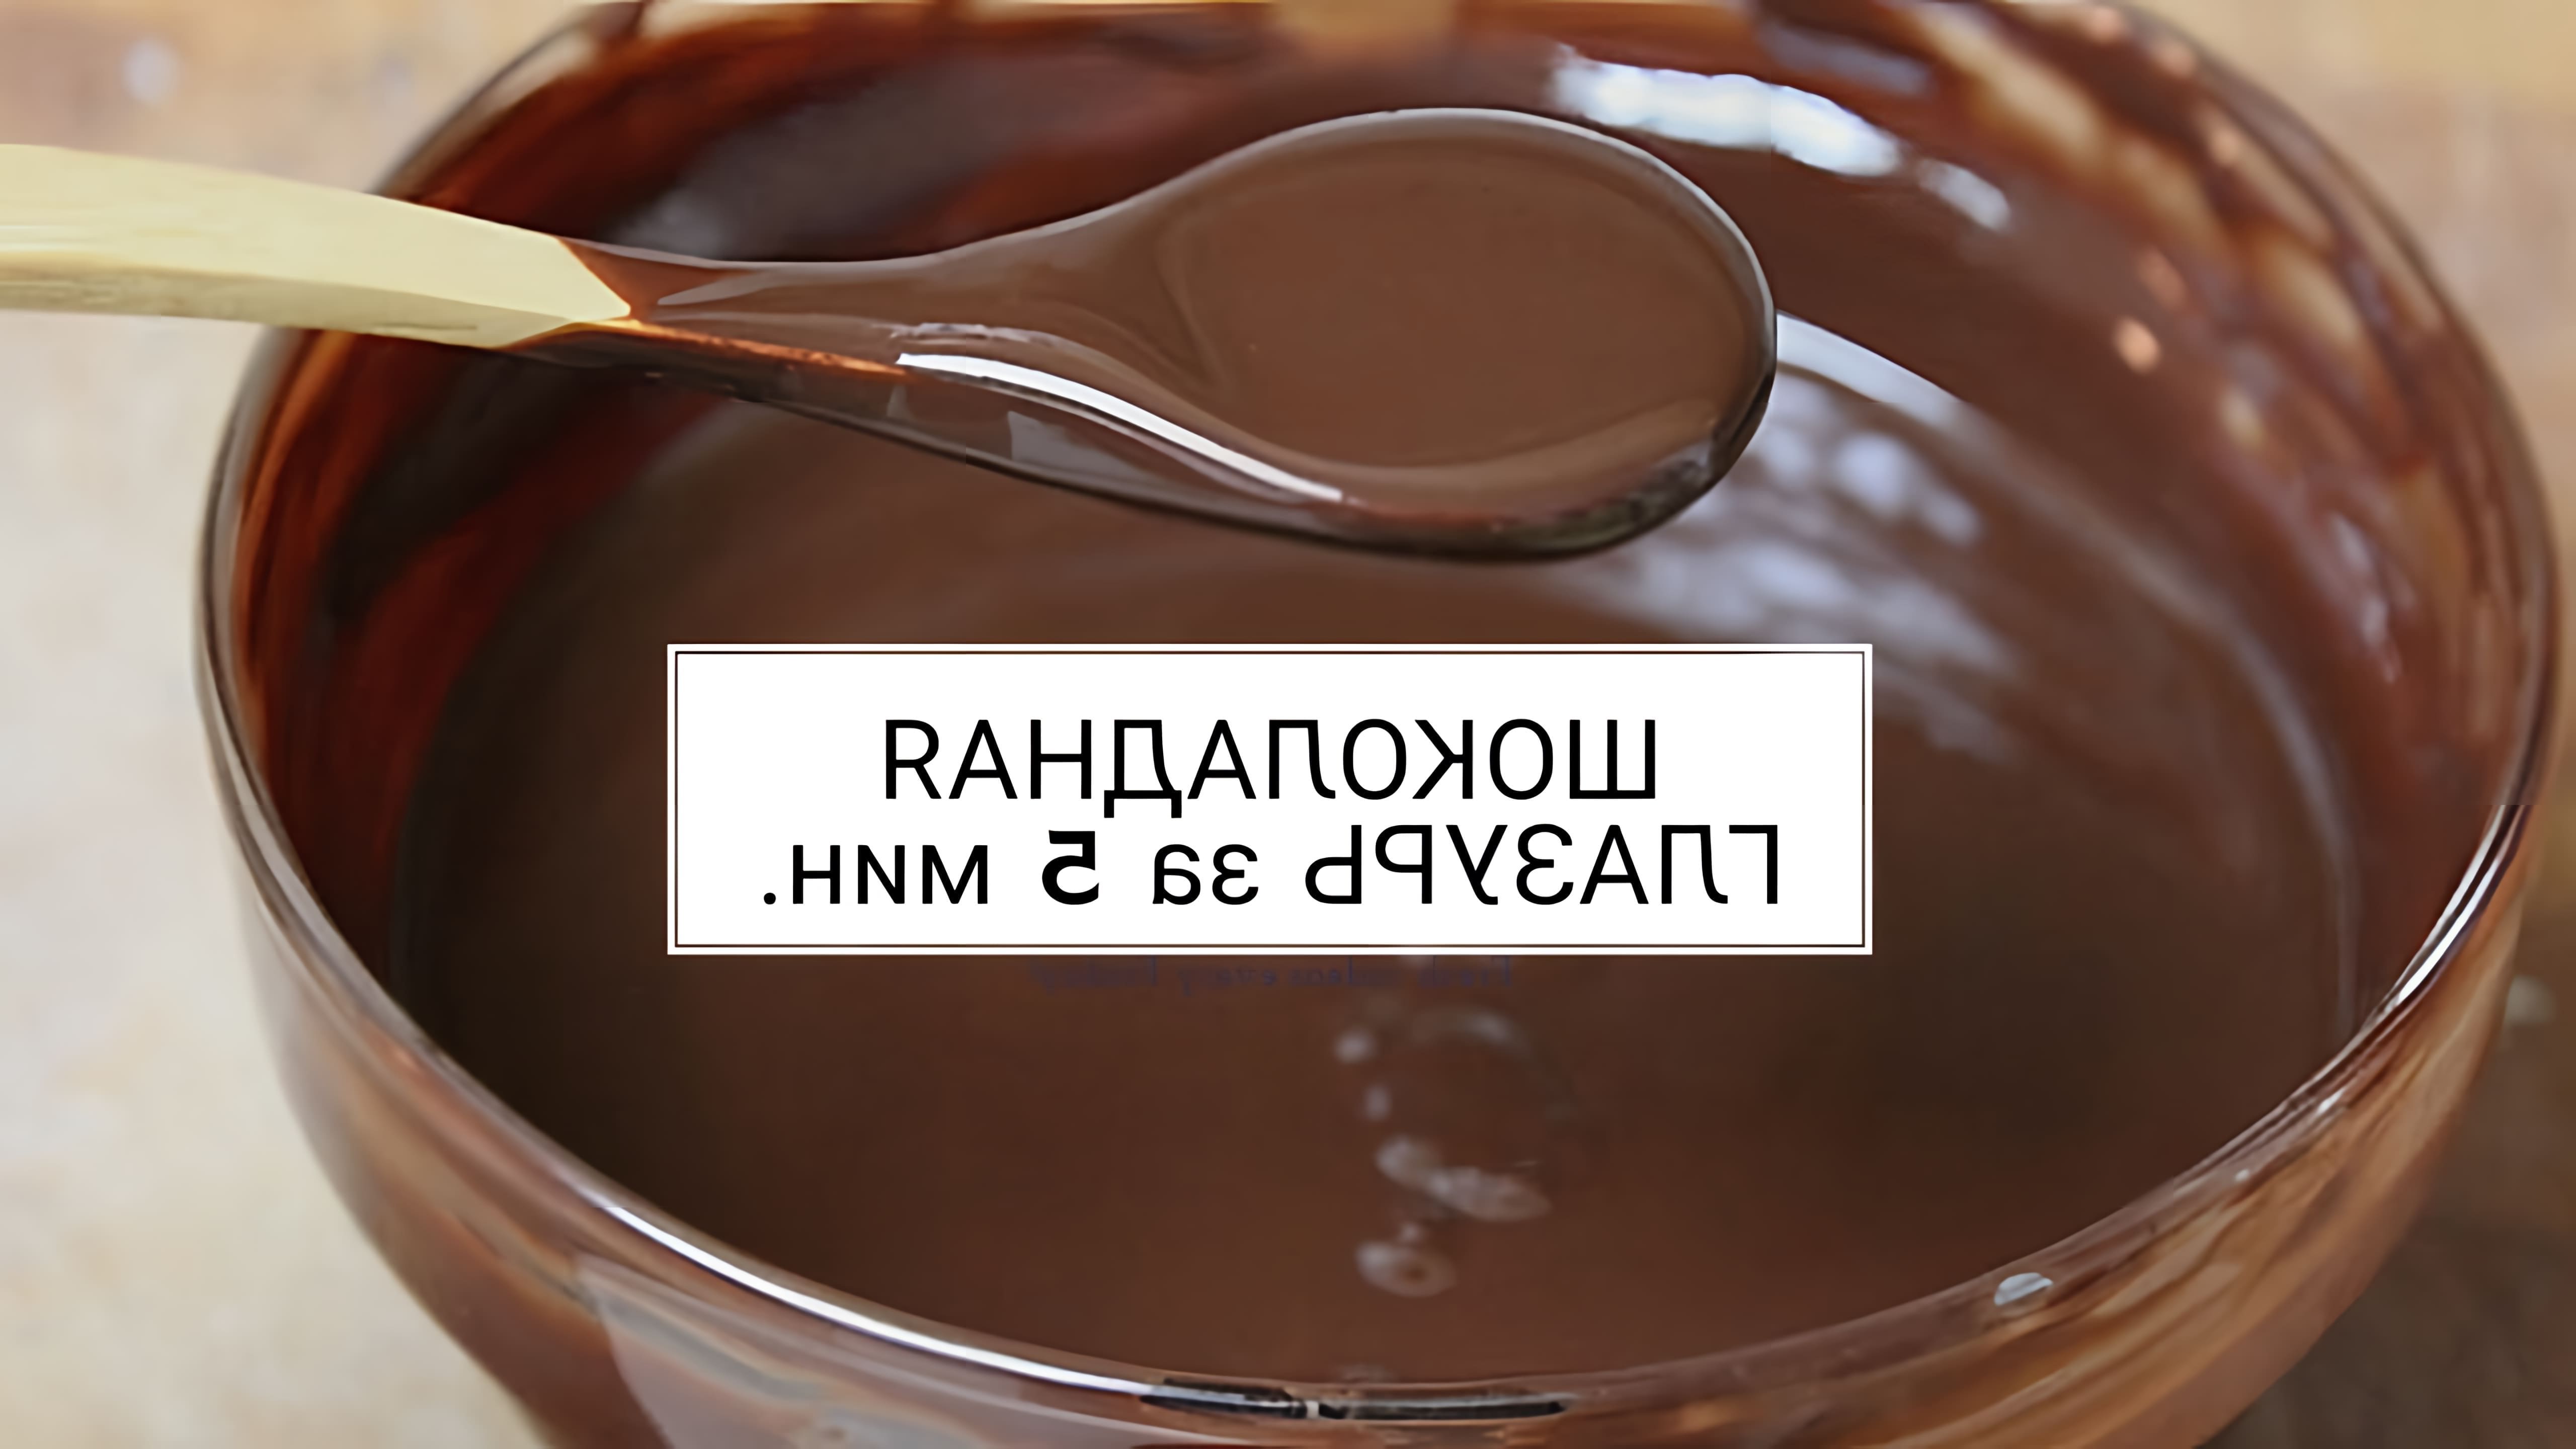 Видео рецепт приготовления шоколадной глазури или глазури